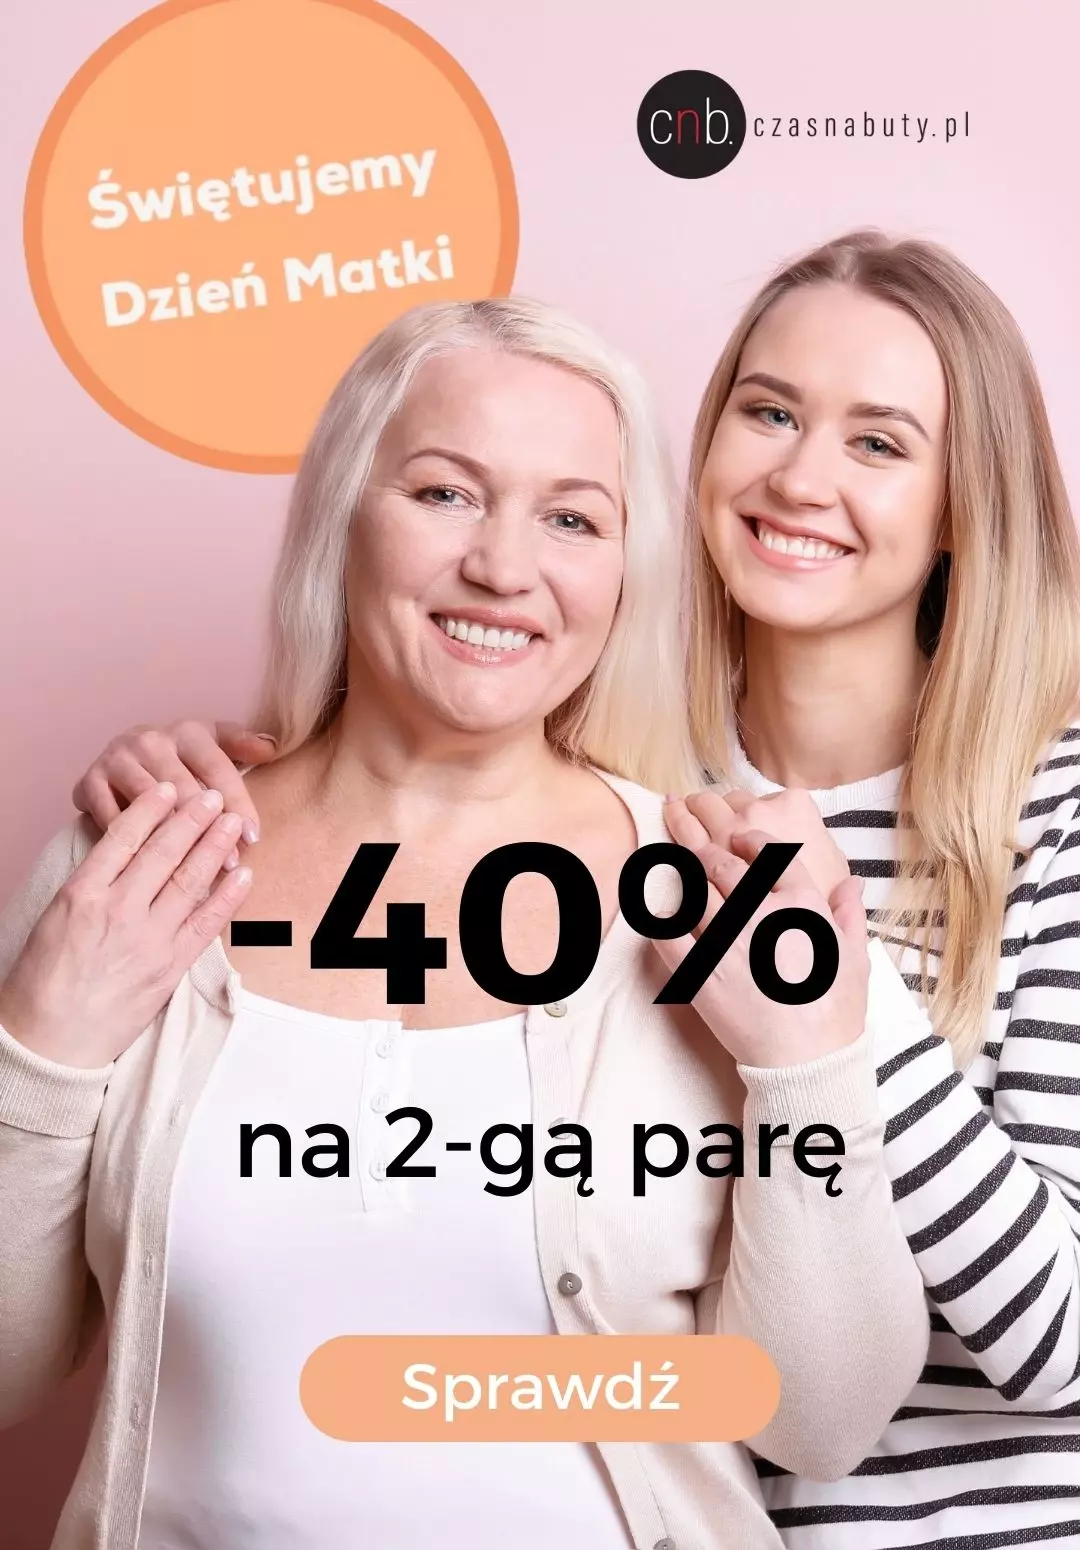 Czasnabuty.pl - gazetka promocyjna -40% na 2-gą parę z okazji Dnia Mamy od piątku 26.05 